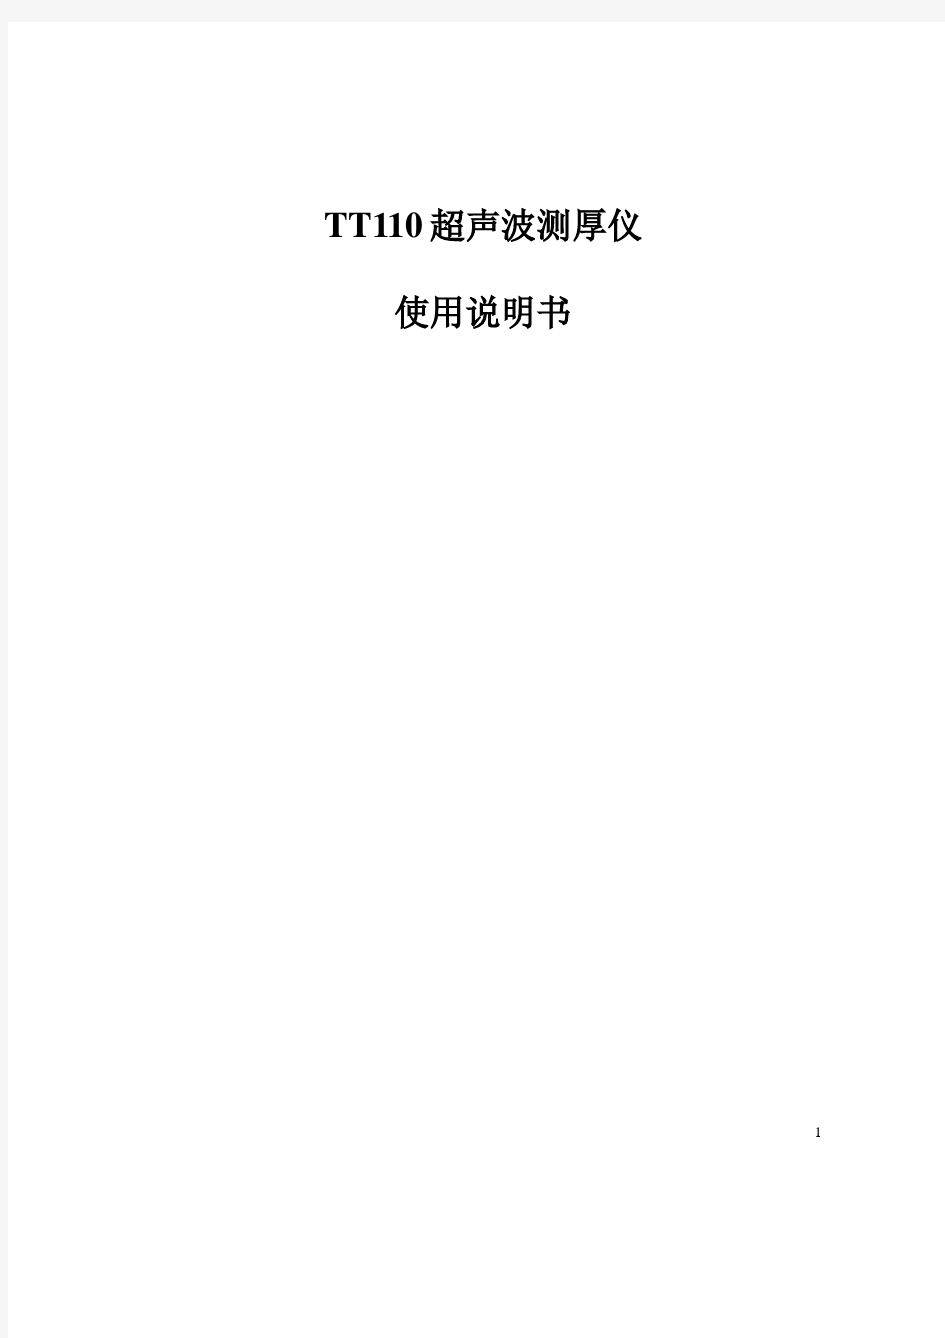 TT110超声波测厚仪使用说明书